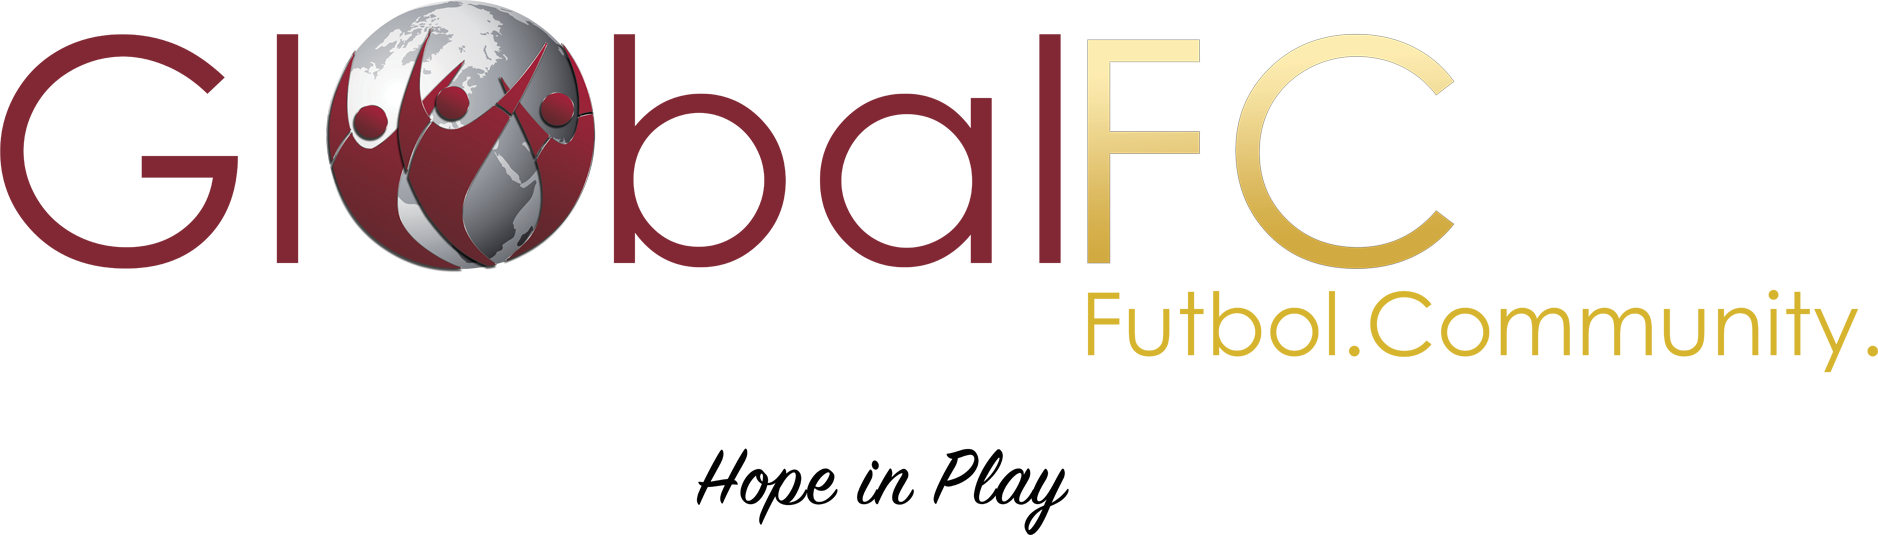 Global FC logo